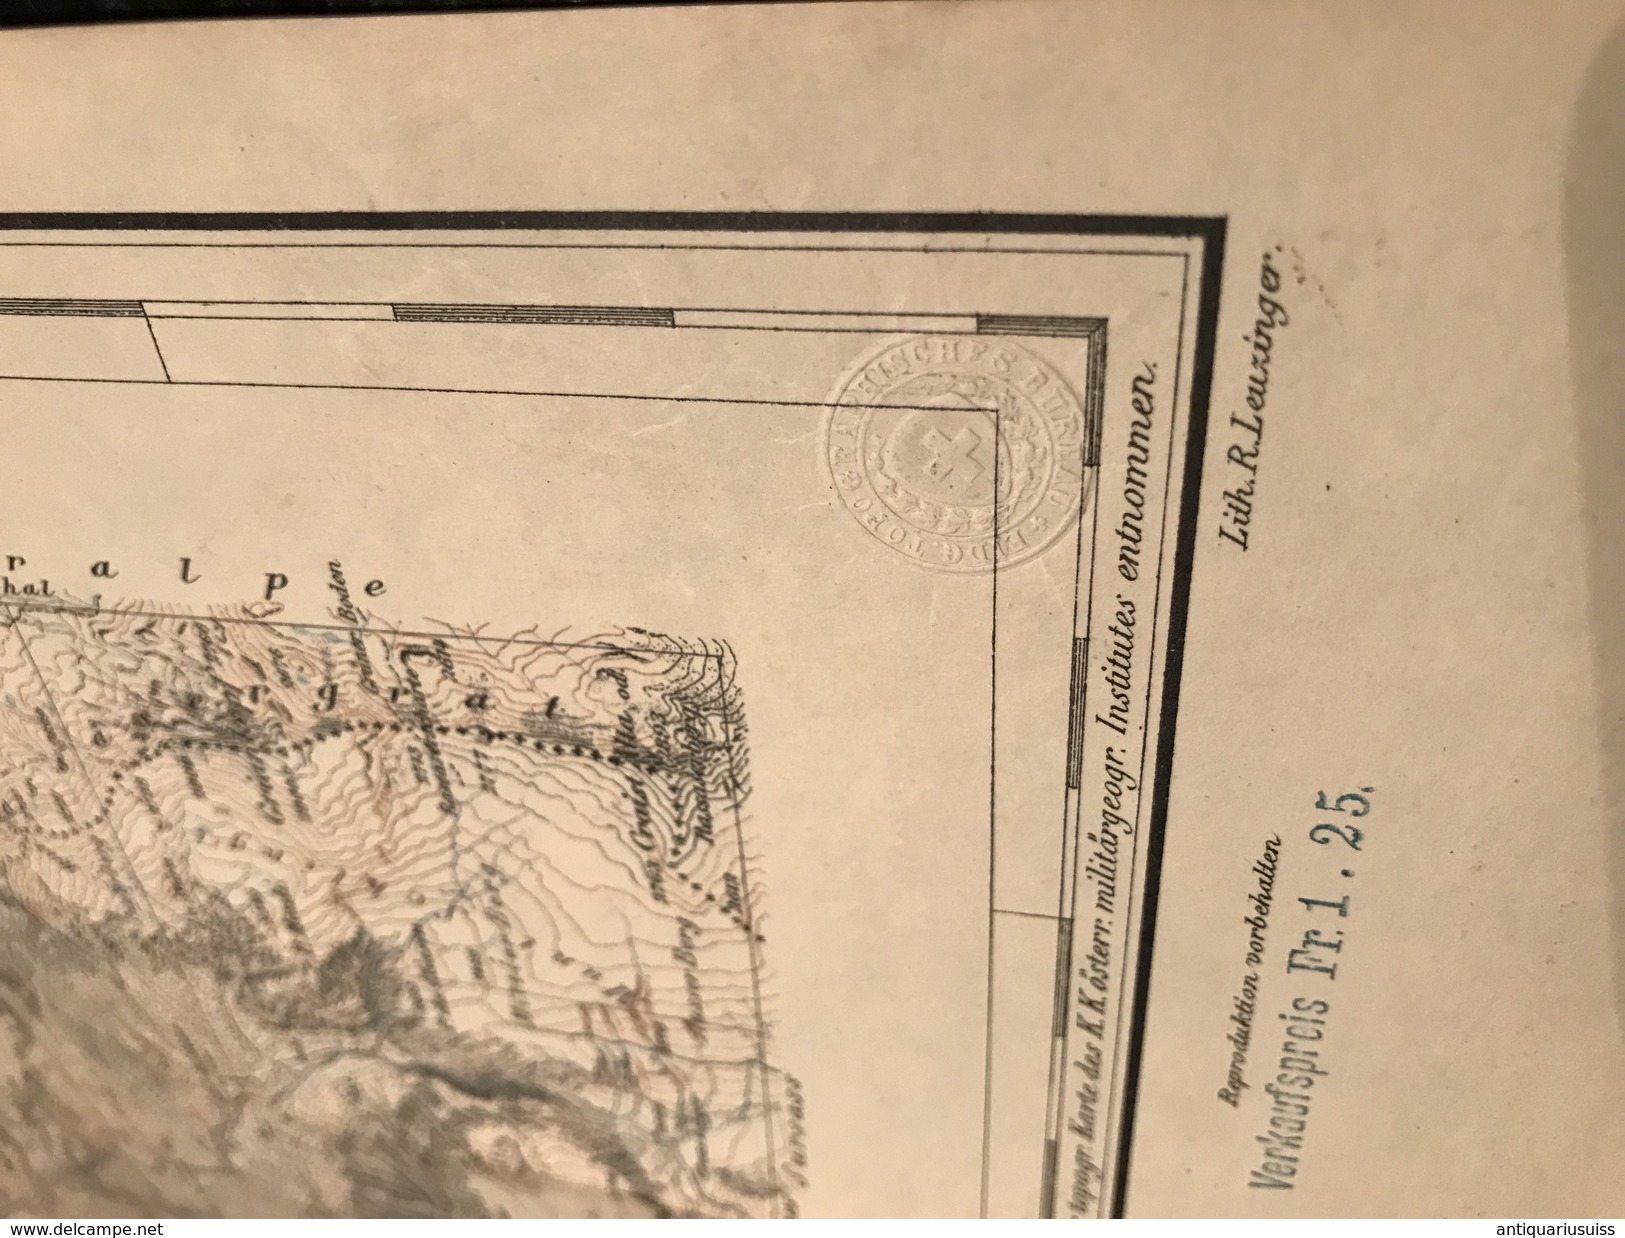 Tarasp - TOPOGRAPHISCHE Atlas DER SCHWEIZ - 1898-CARTE TOPOGRAPHIQUE DE LA SUISSE - Siegfriedatlas - Blatt Nr. 421 - Cartes Topographiques